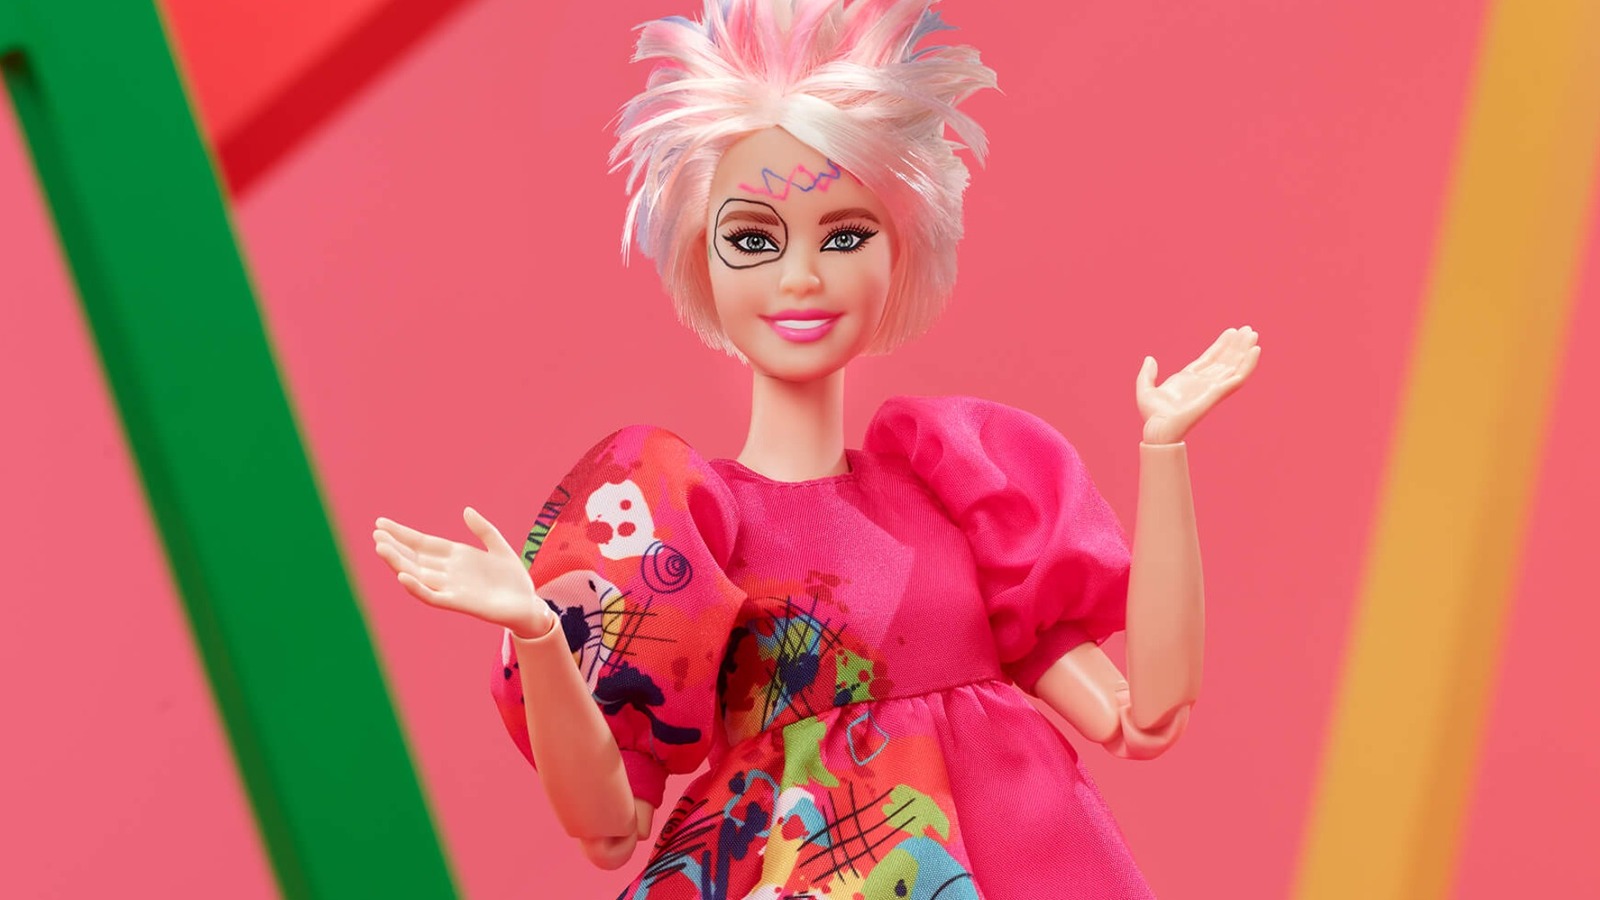 Mattel unveils new doll based on Kate McKinnon's Weird Barbie